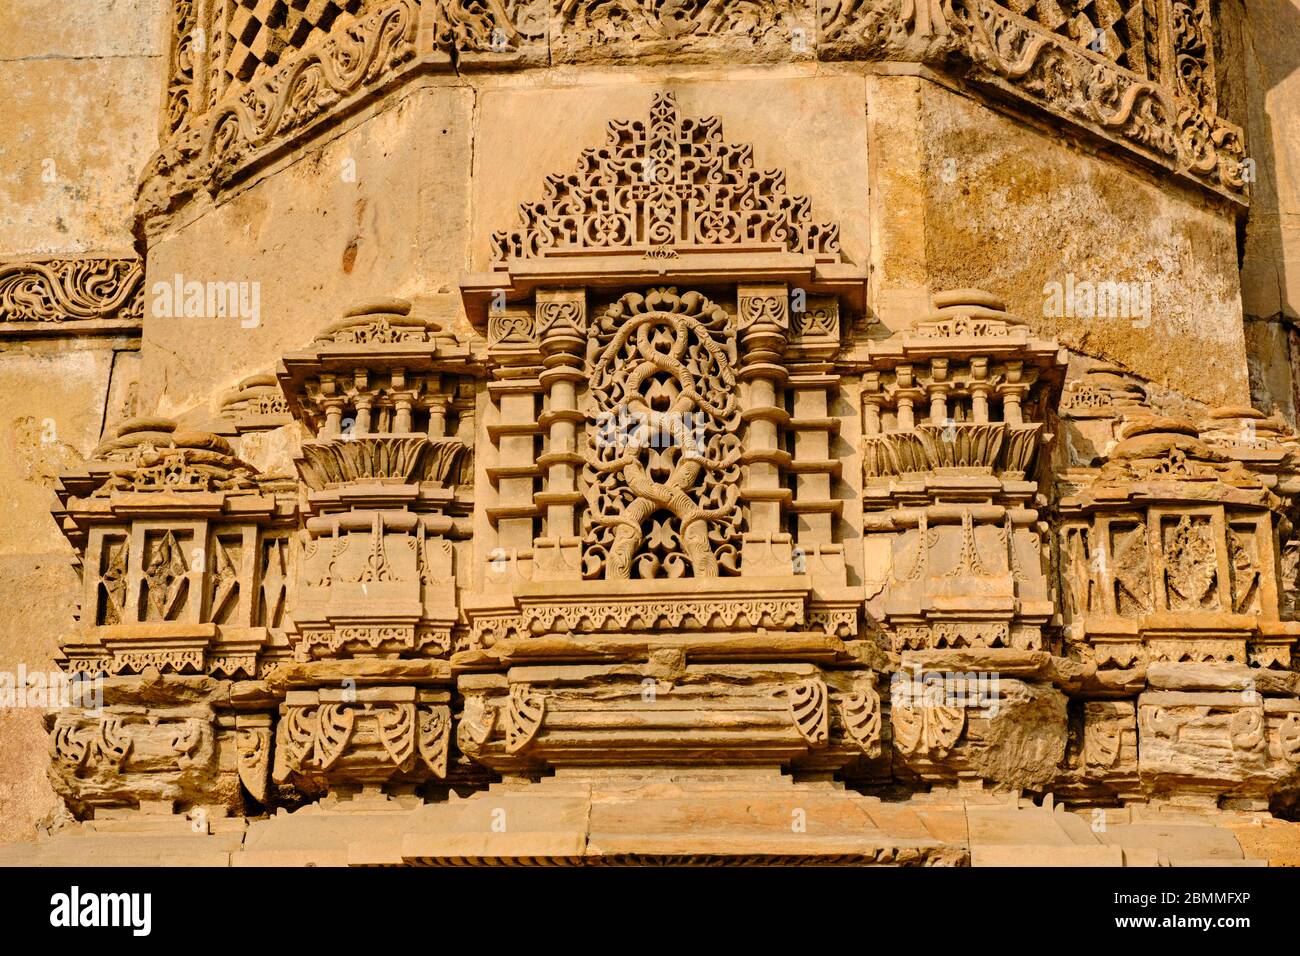 Inde, Gujarat, Ahmedabad, ville classée au patrimoine mondial de l'UNESCO, mosquée Jama Masjid construite par Ahmad Shah en 1423 Banque D'Images